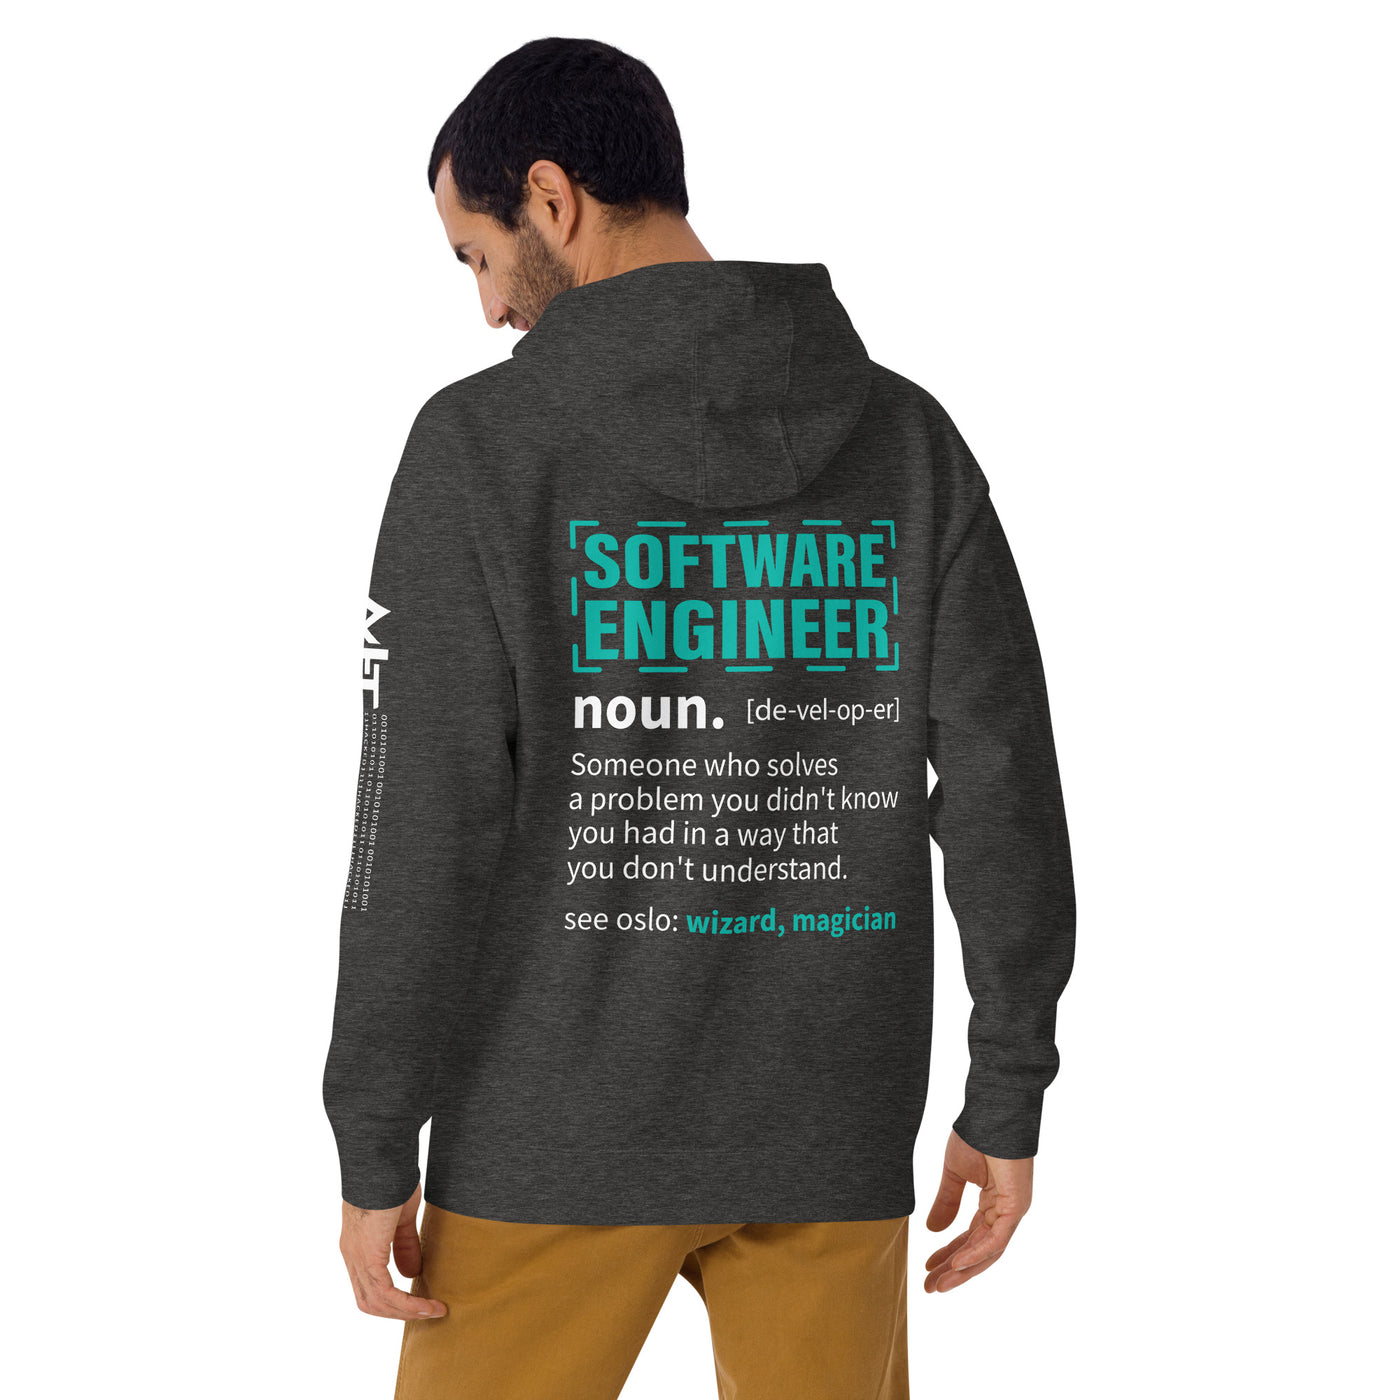 Software Engineer Def : Blue Unisex Hoodie ( Back Print )